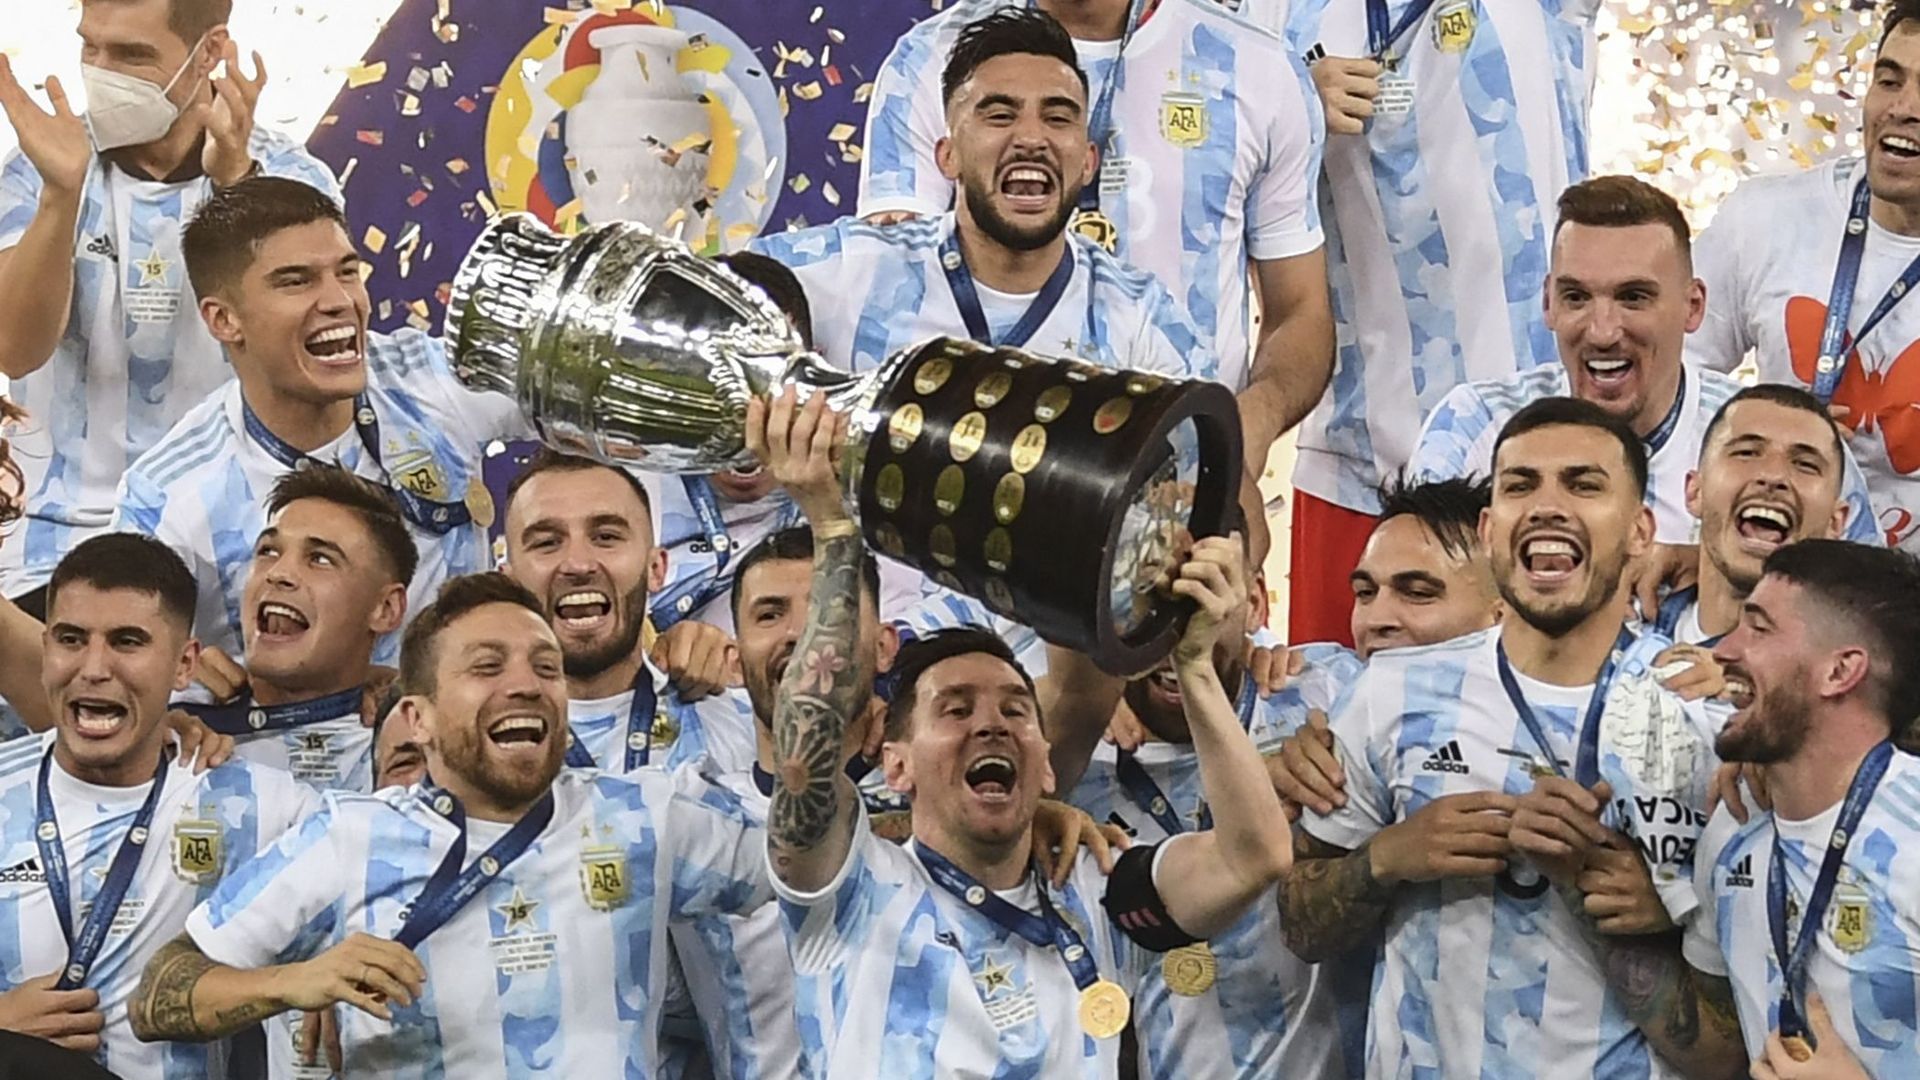 L’argentin, Lionel Messi, célèbre la victoire avec ses coéquipiers après avoir remporté la Copa America 2021. Une victoire face au Brésil le 11 juillet 2021 au stade Maracana de Rio de Janeiro